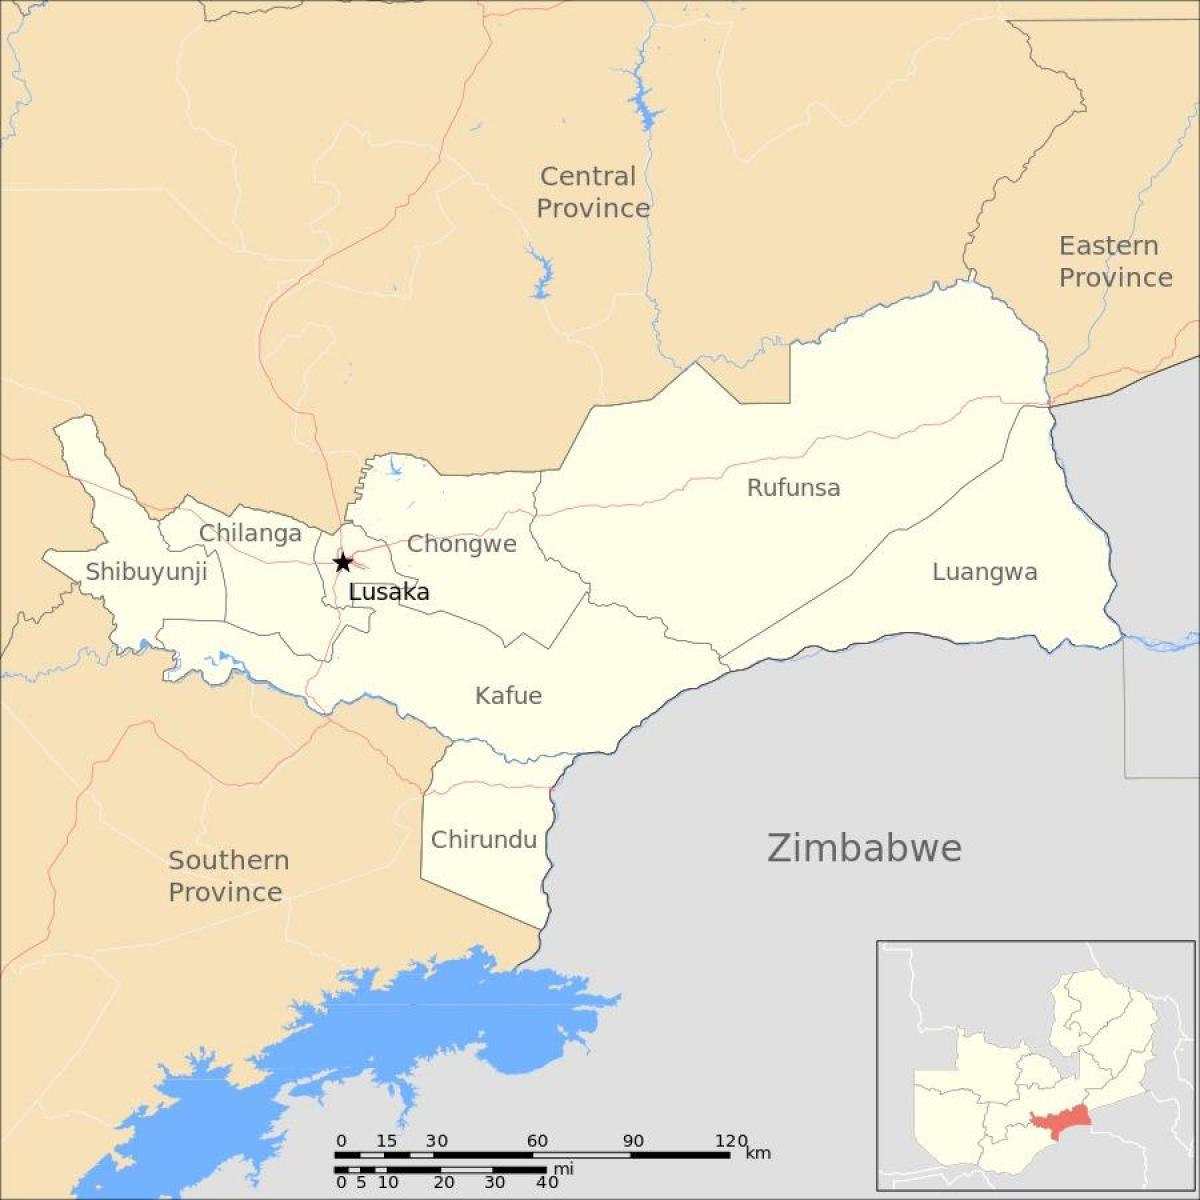 מפה של זמביה לוסקה